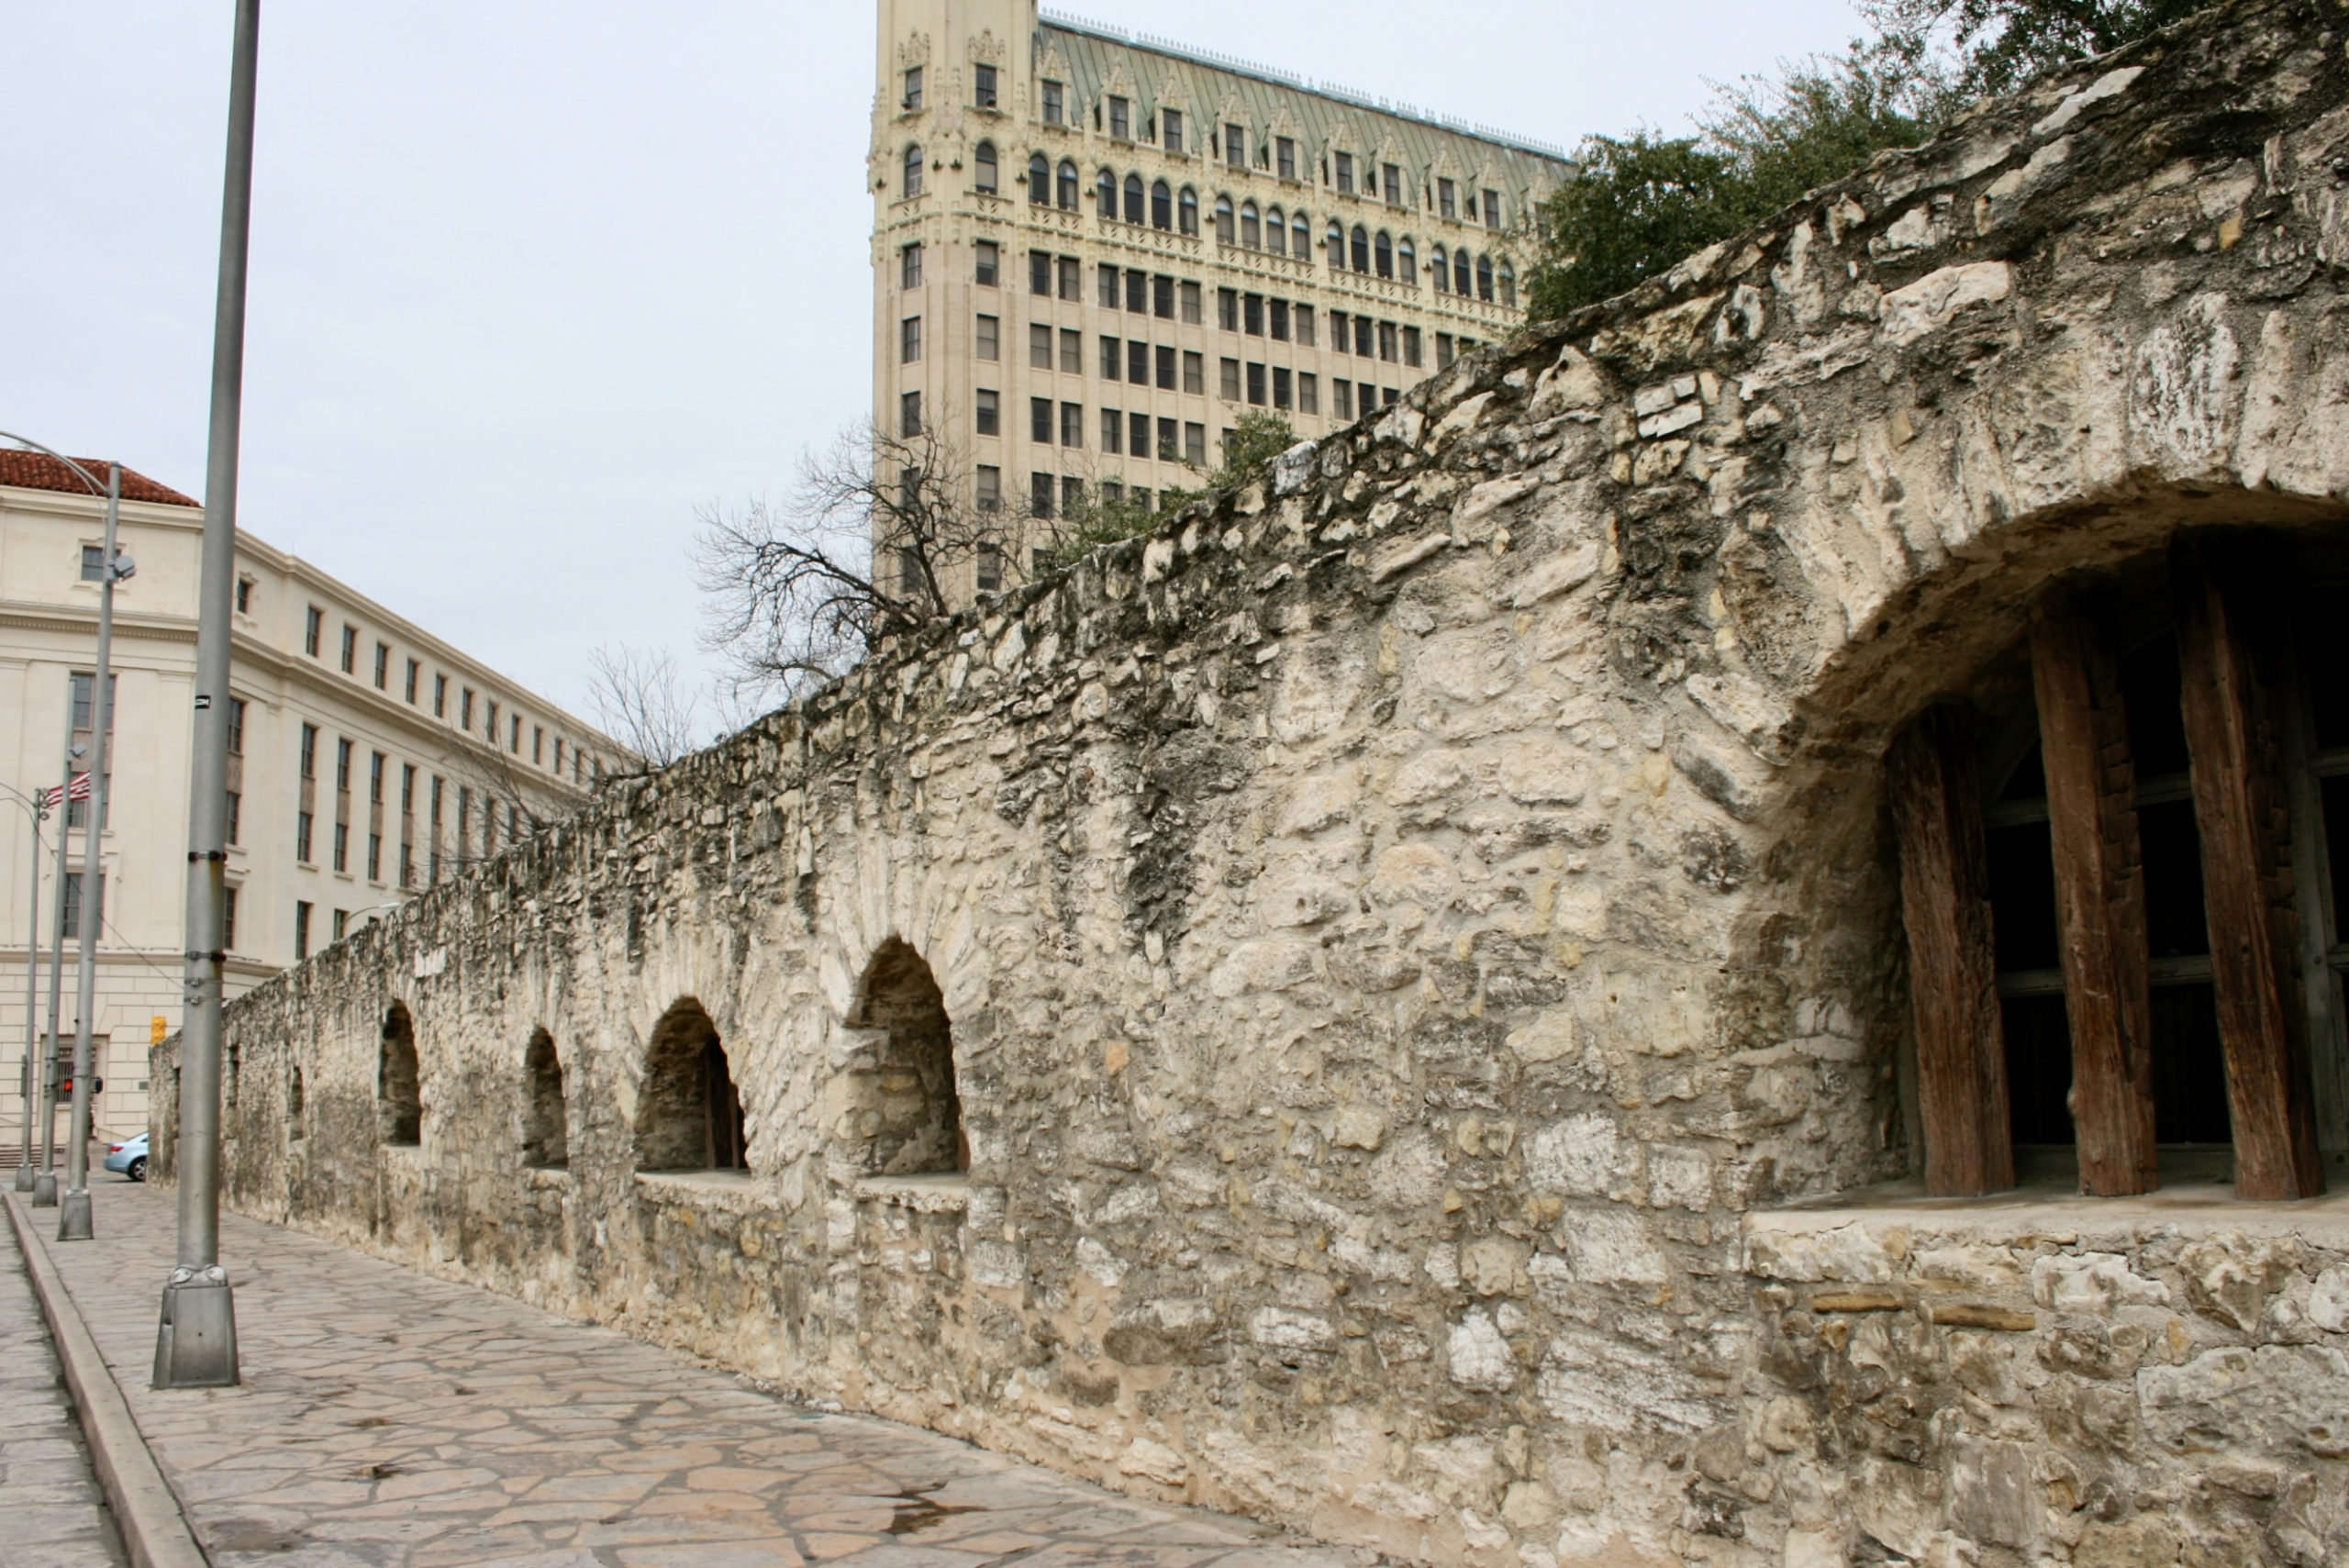 The Alamo San Antonio Texas